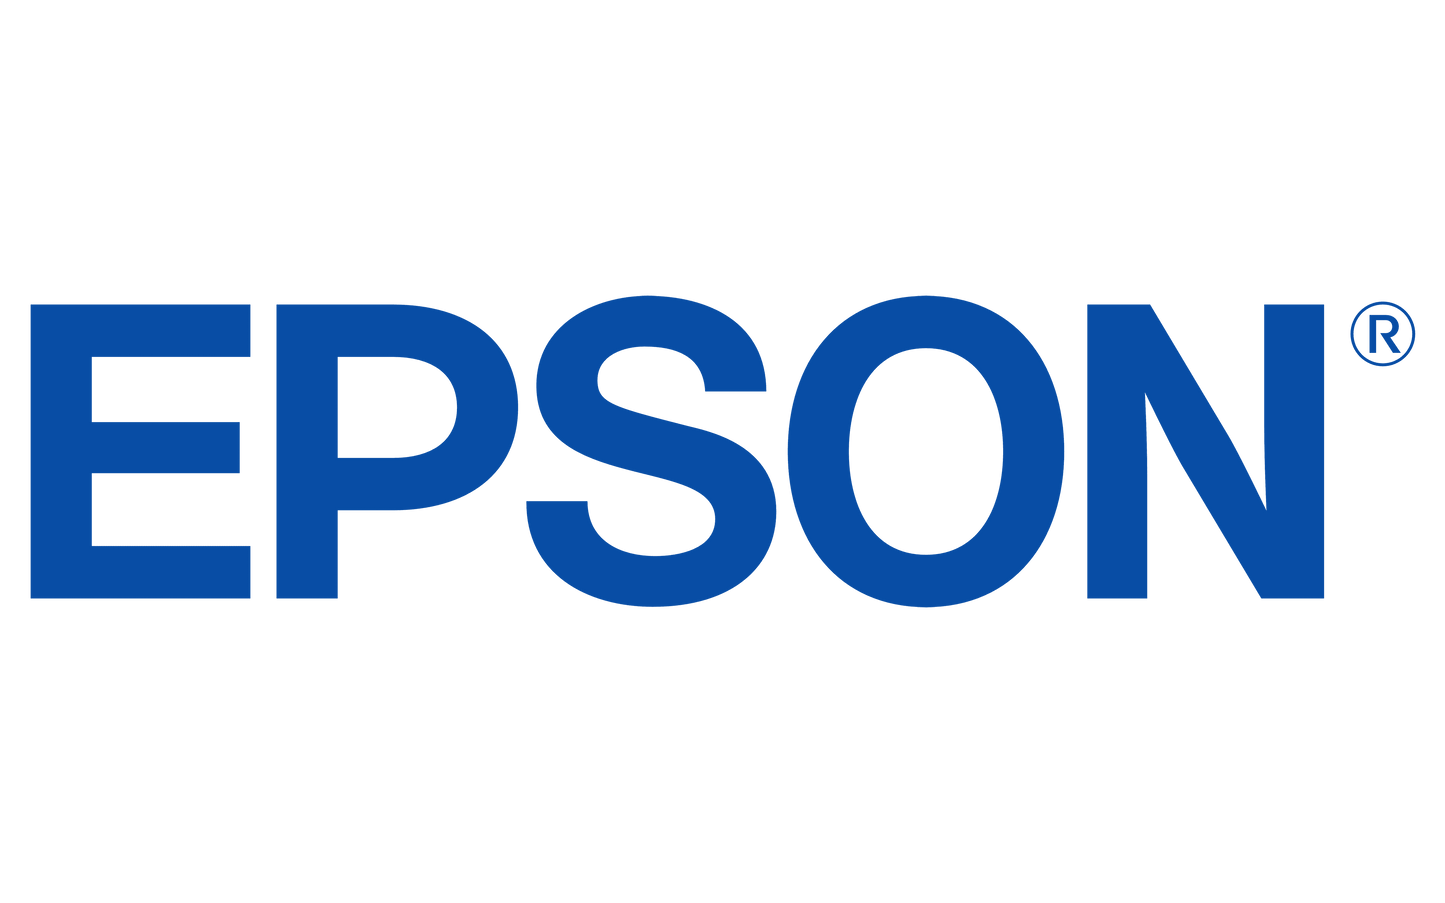 Epson Refurbished 204876600 TM-T88III Open Door Sensor